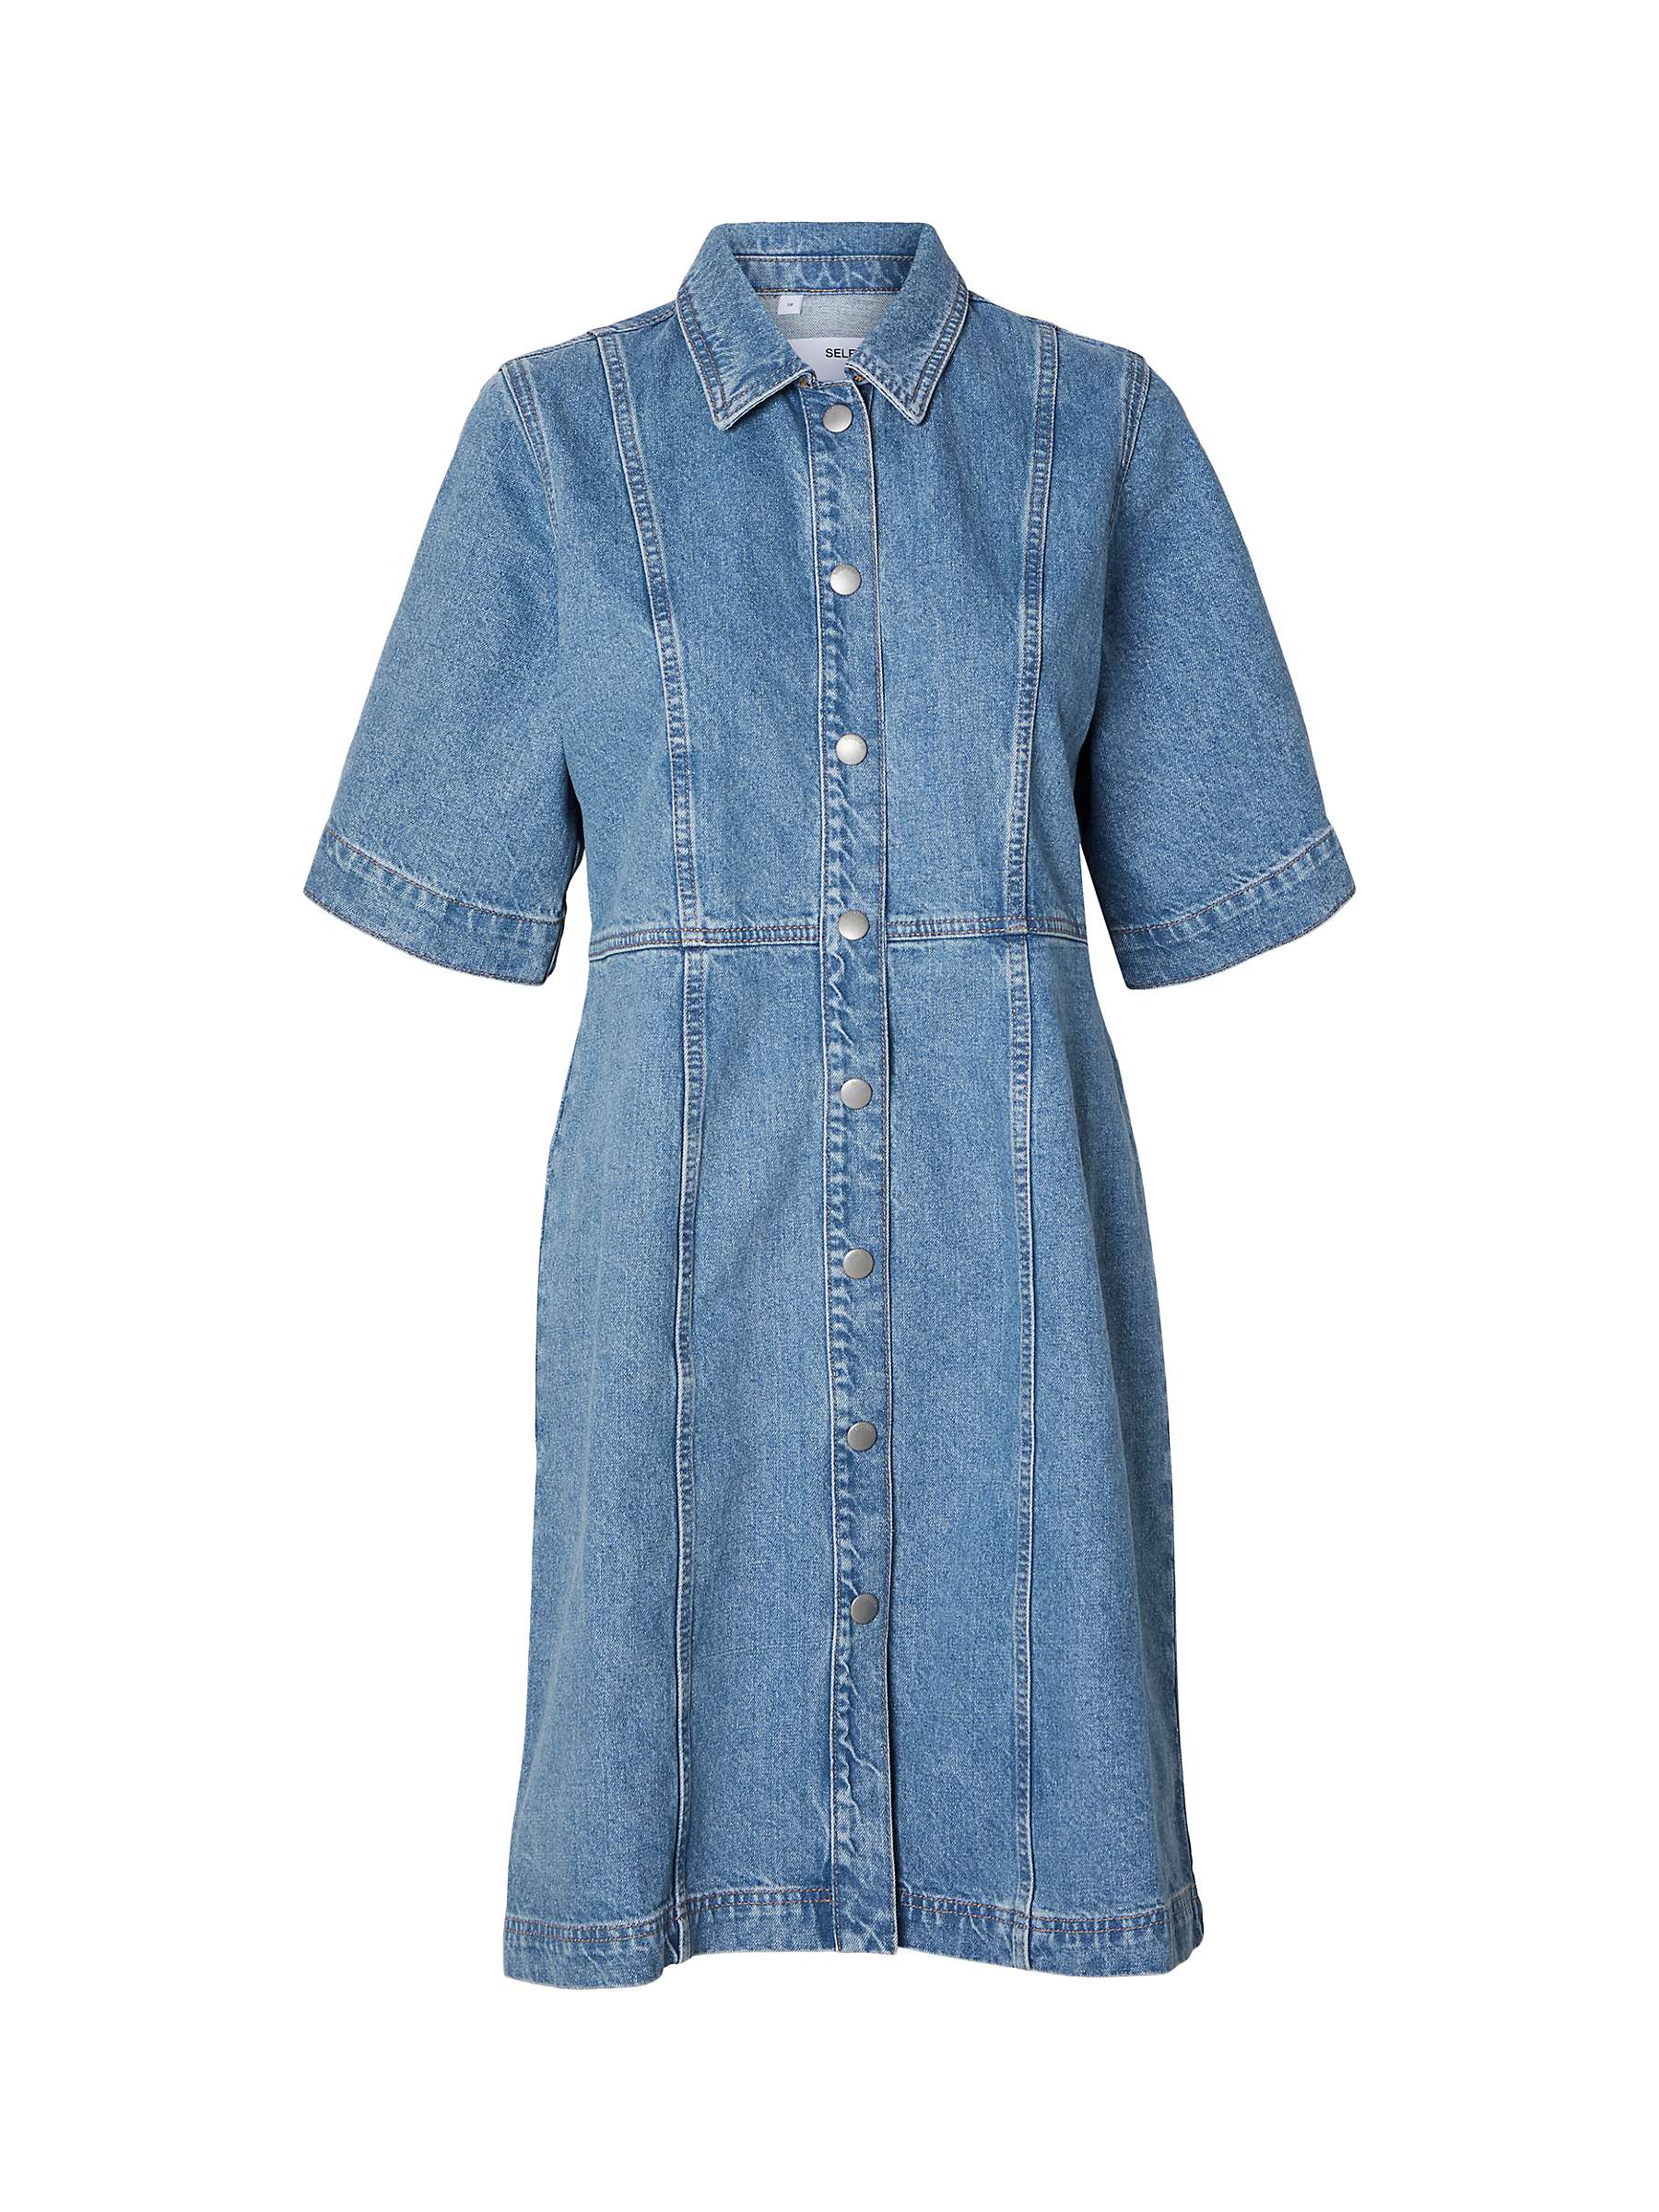 Buy SELECTED FEMME Denim Shirt Dress, Blue Online at johnlewis.com